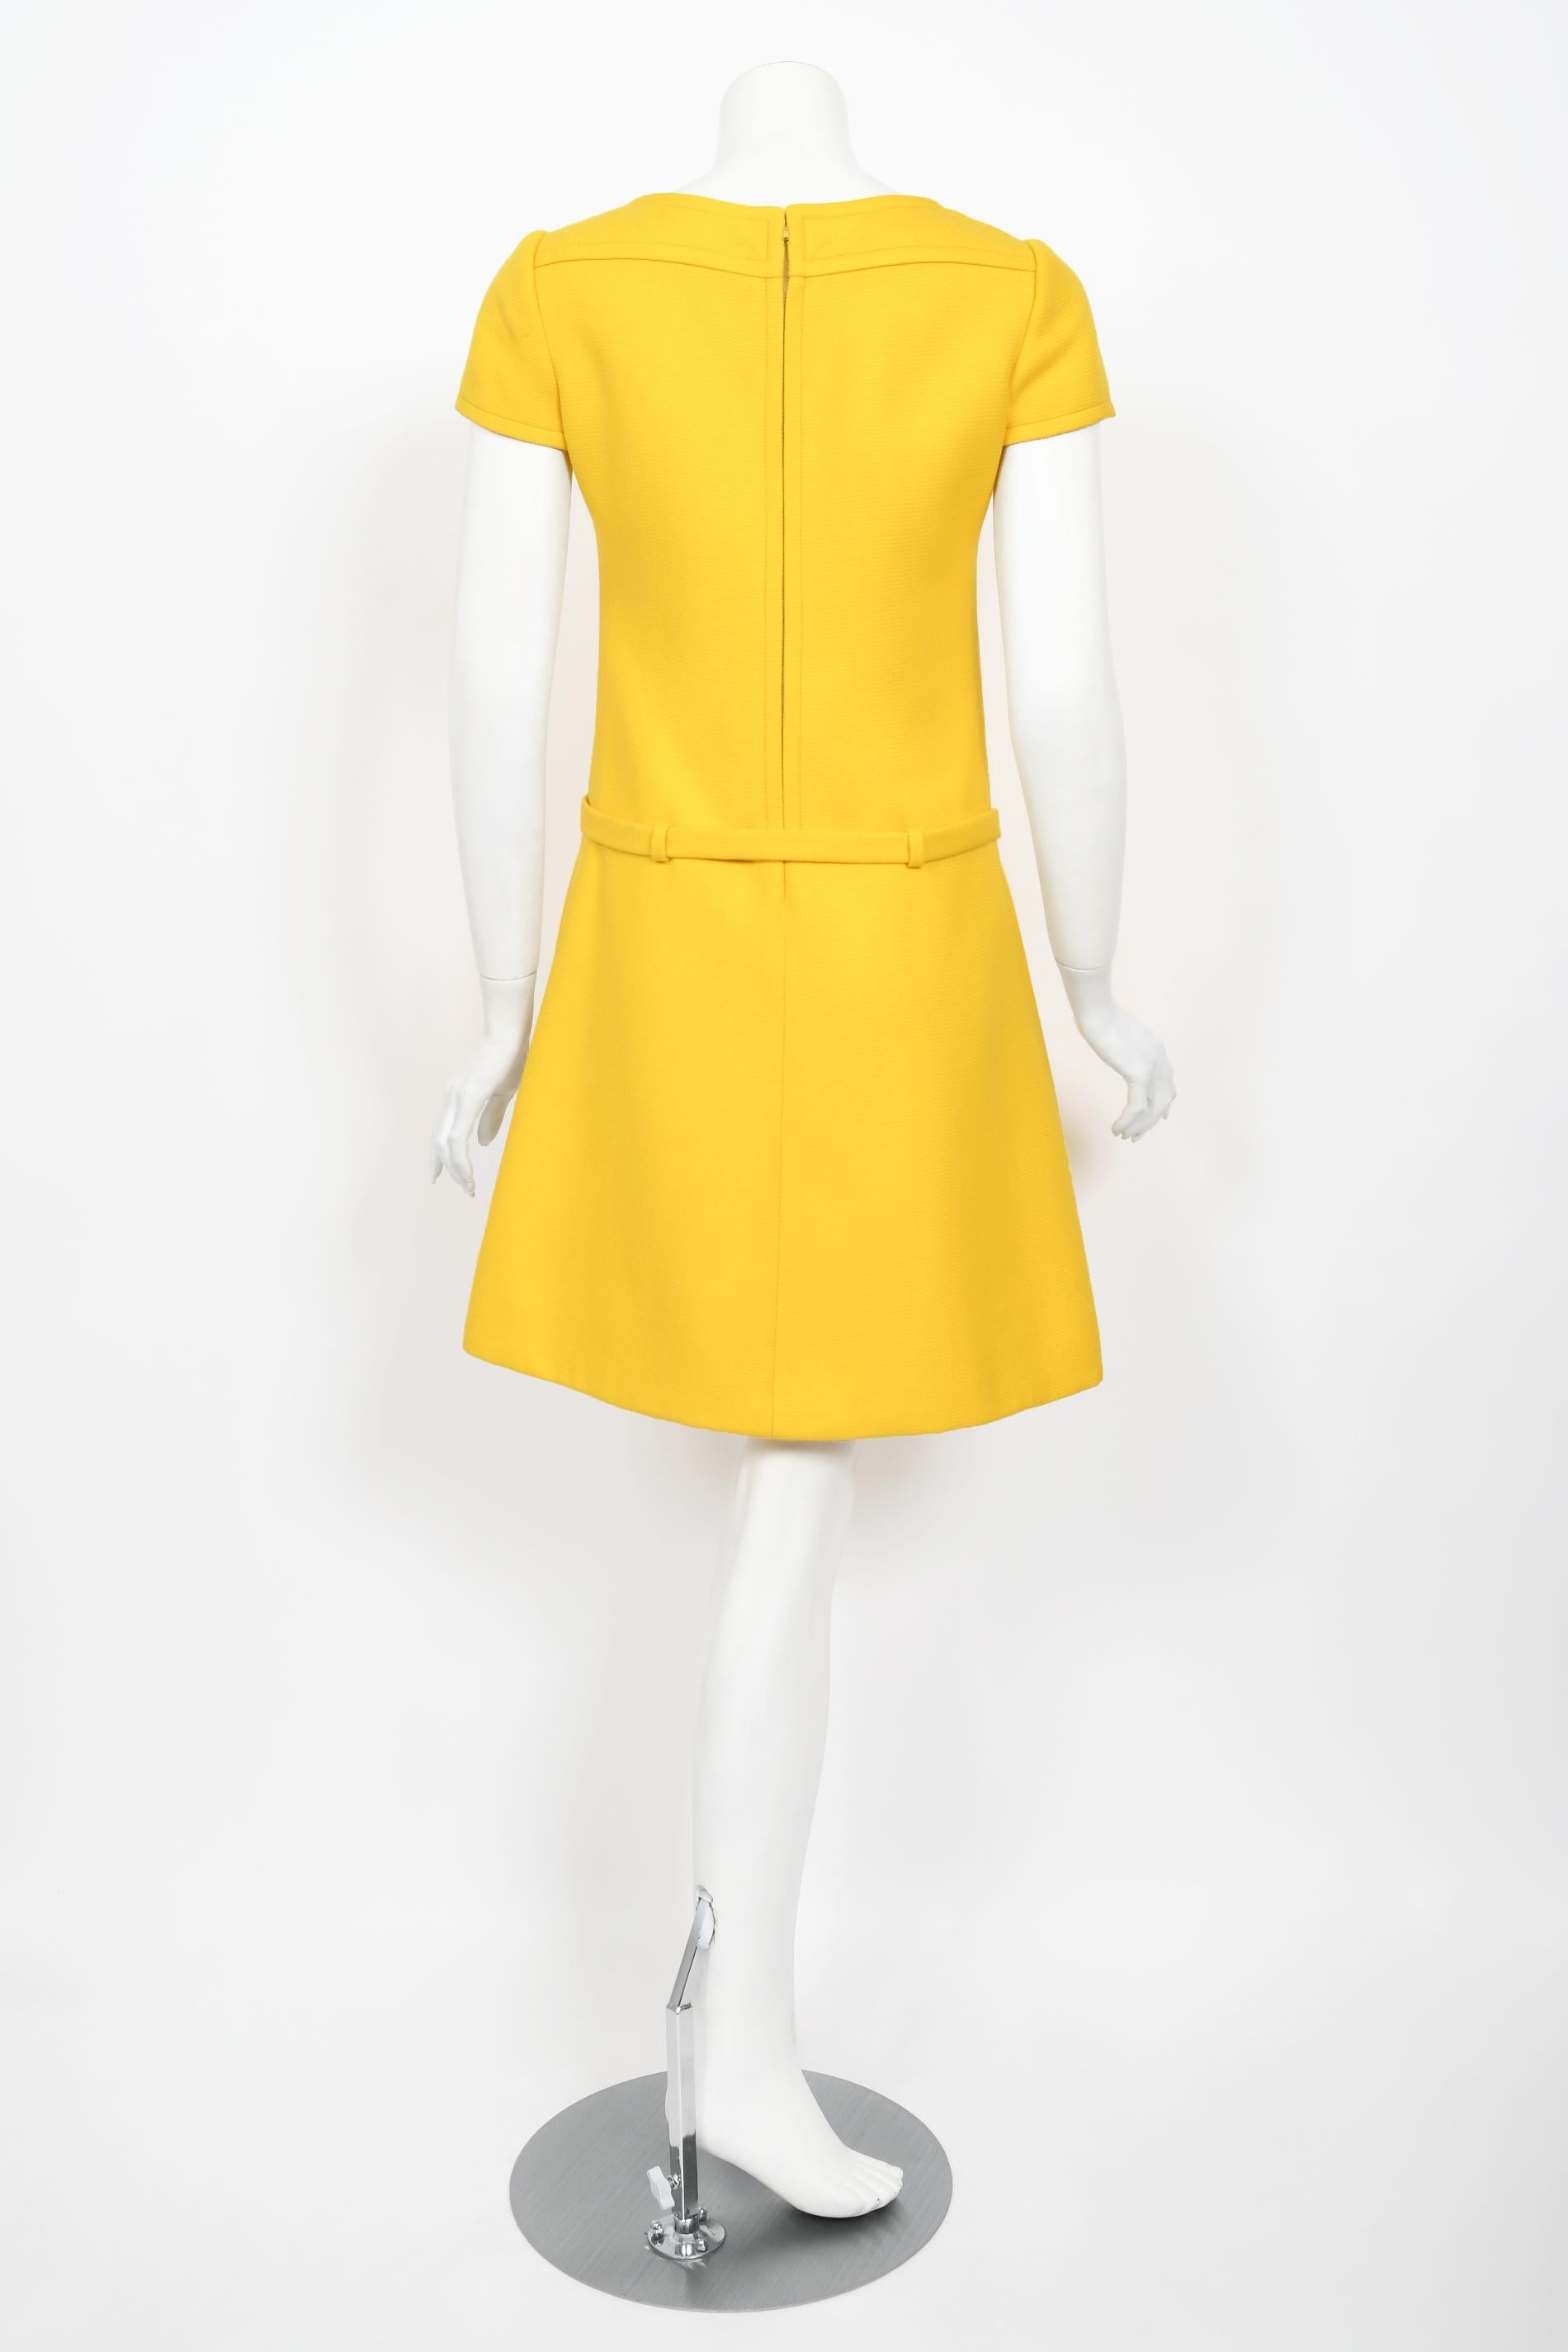 Vintage 1968 André Courrèges Paris Couture Yellow Wool Belt Space-Age Mod Dress 9